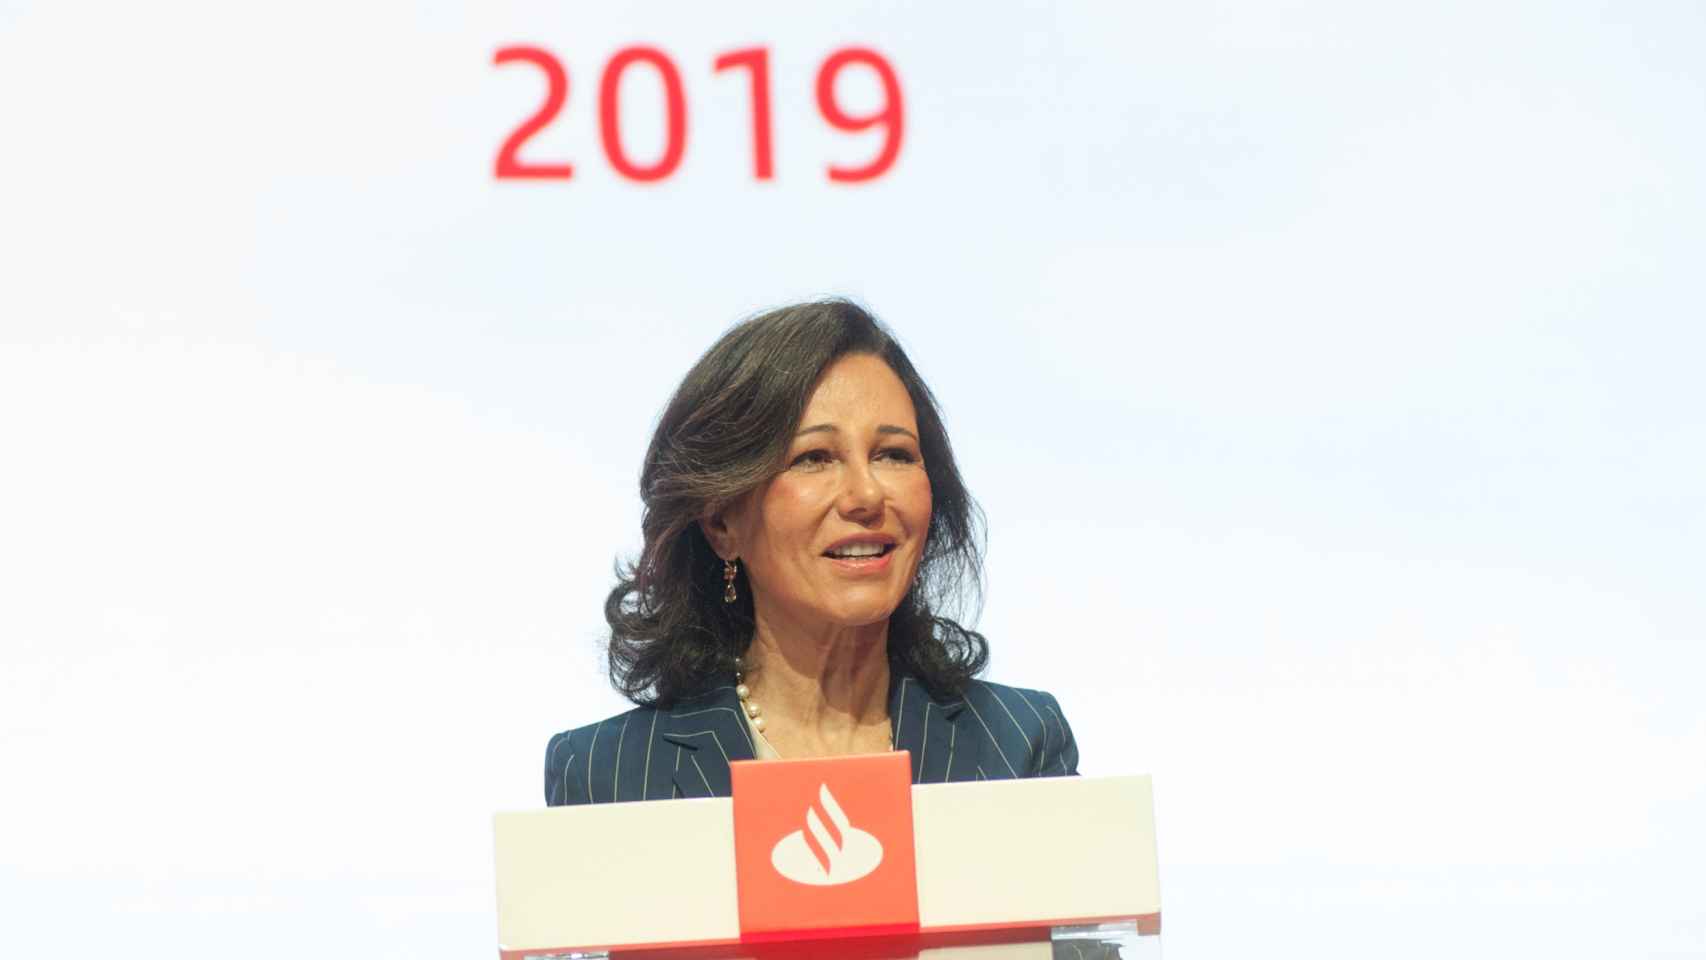 Ana Botín durante su discurso en la Junta General de Accionistas del Banco Santander.